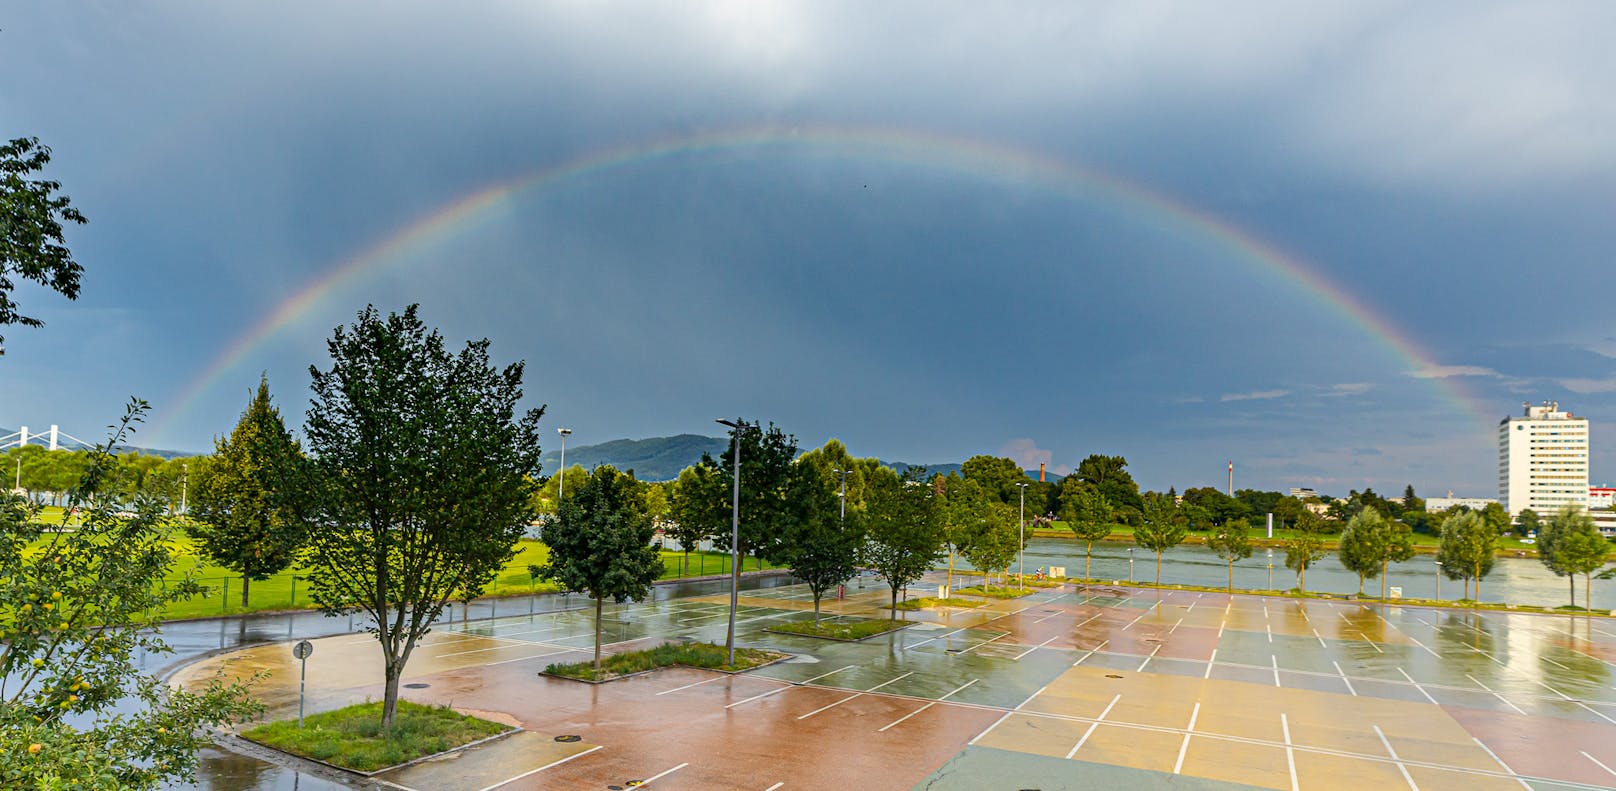 Ruhe nach dem Sturm: Ein großer Regenbogen über Urfahr.